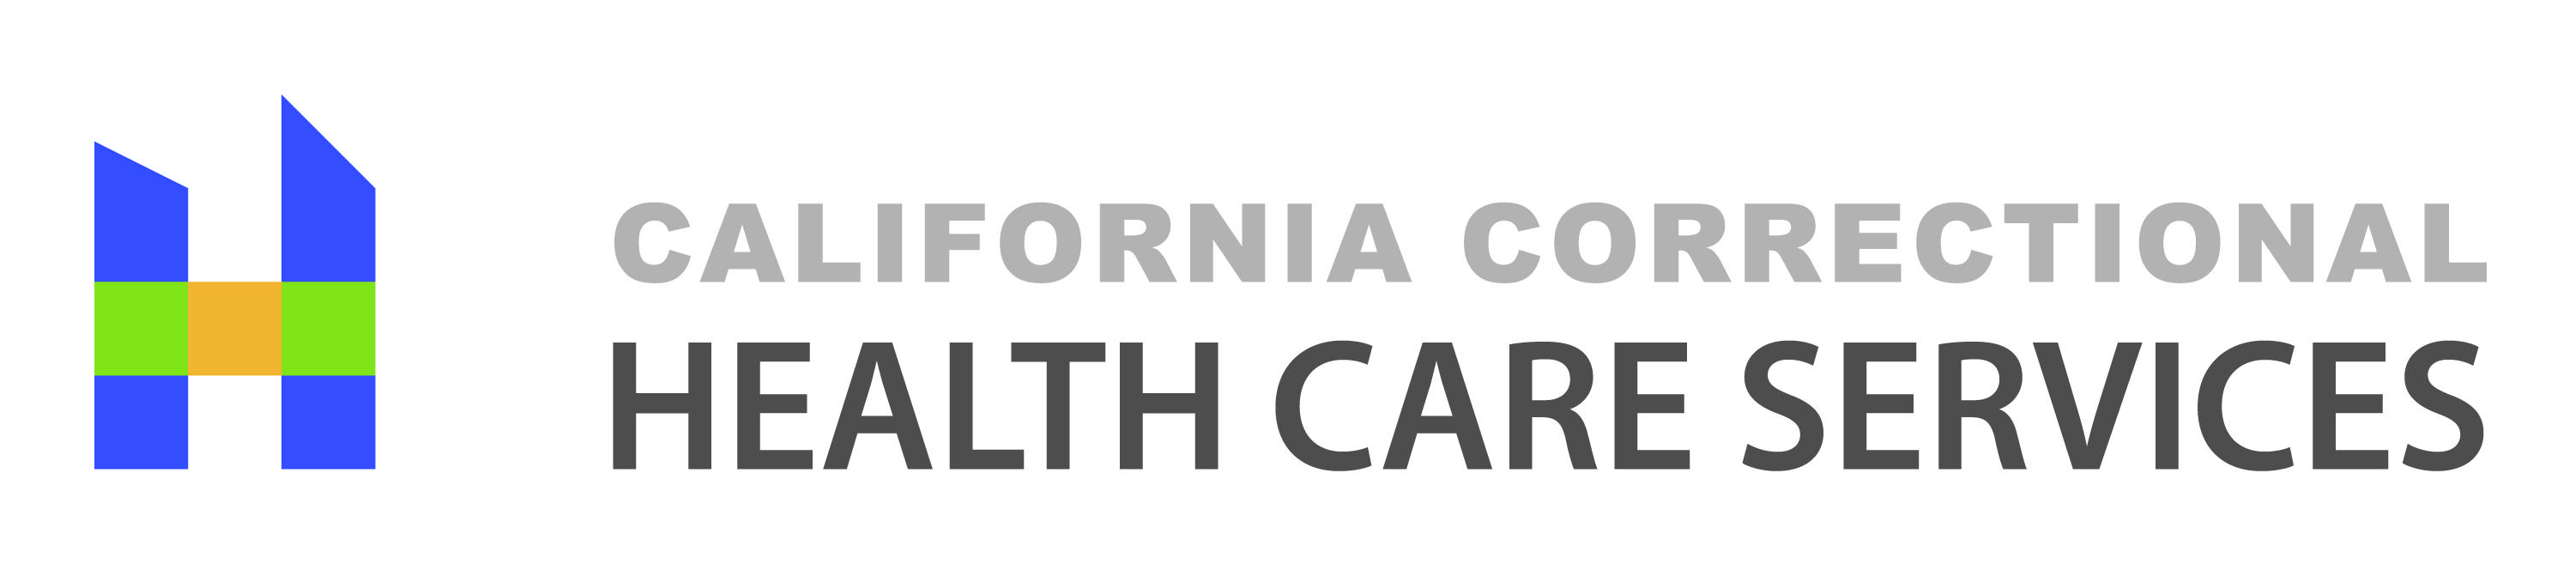 Cchcs Logo - California Correctional Health Care Services (CCHCS)